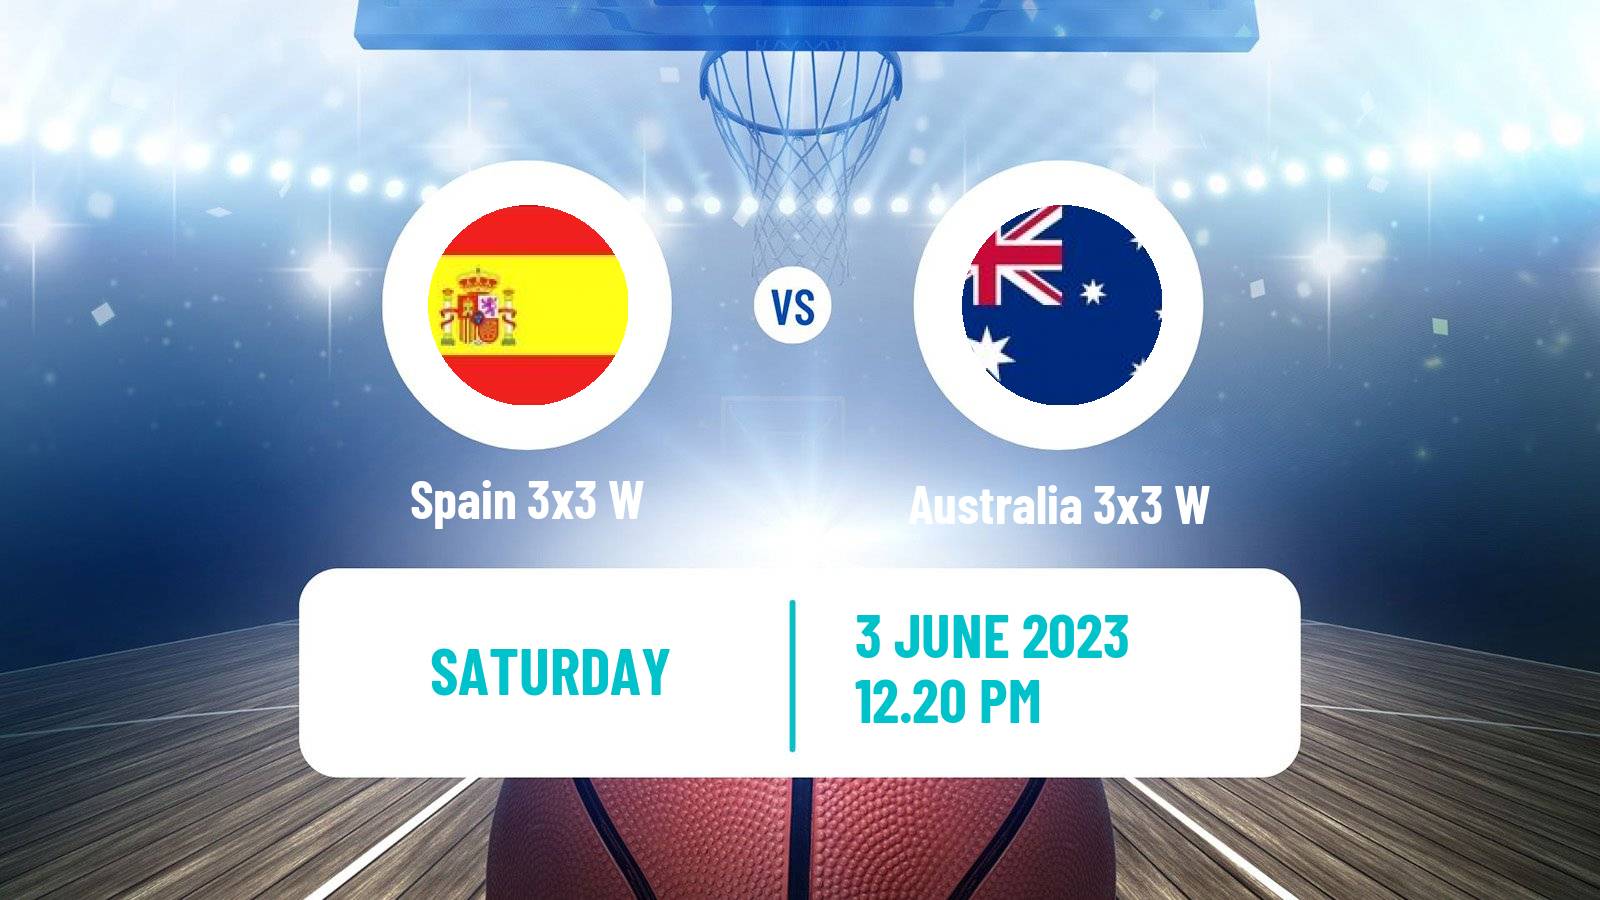 Basketball World Cup Basketball 3x3 Women Spain 3x3 W - Australia 3x3 W